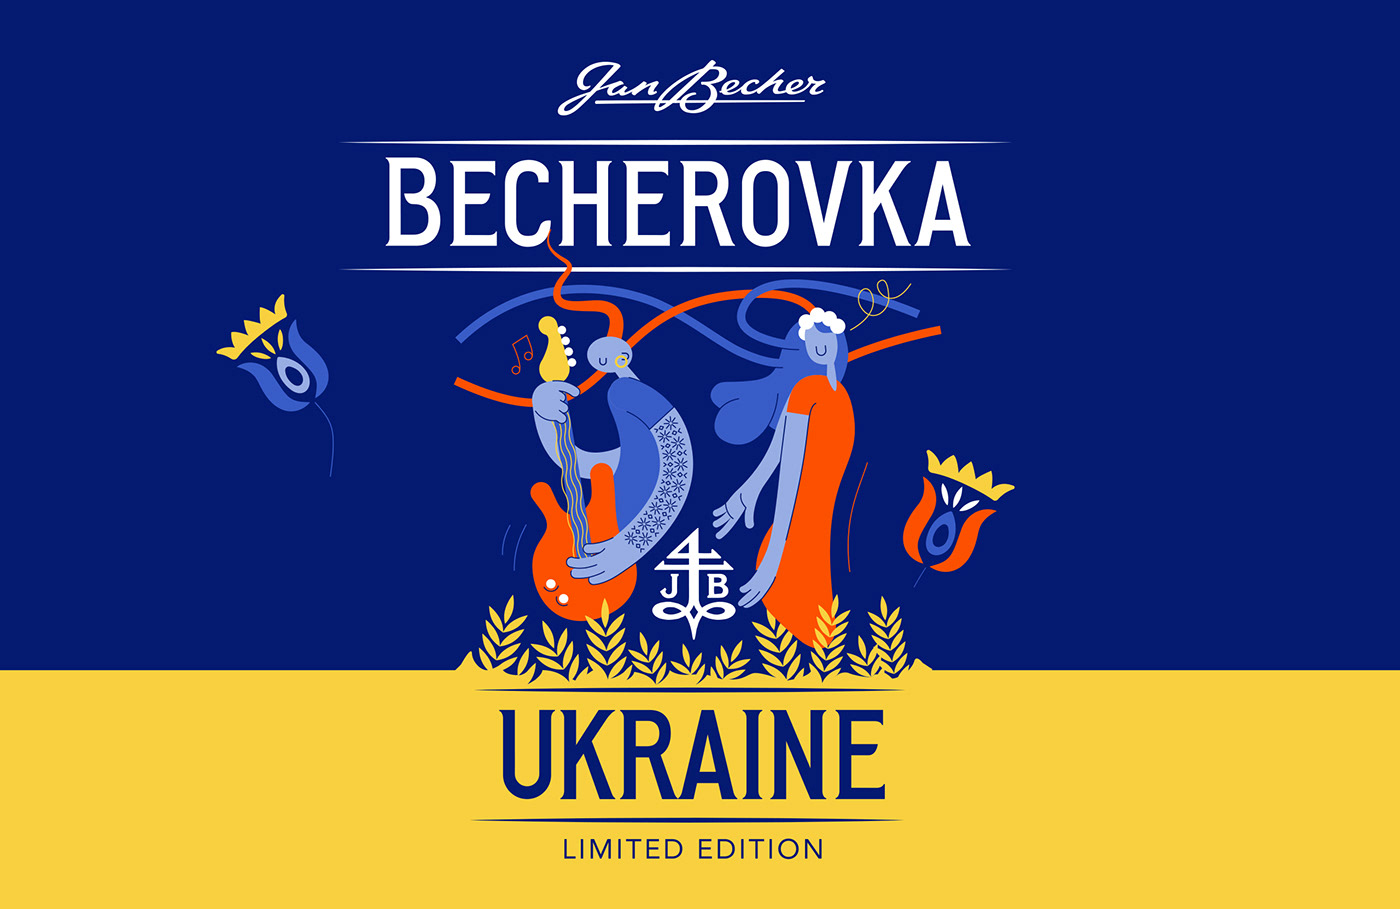 alcohol packaging animation  becherovka bottle design creative illusration Independence label design packaging design ukraine